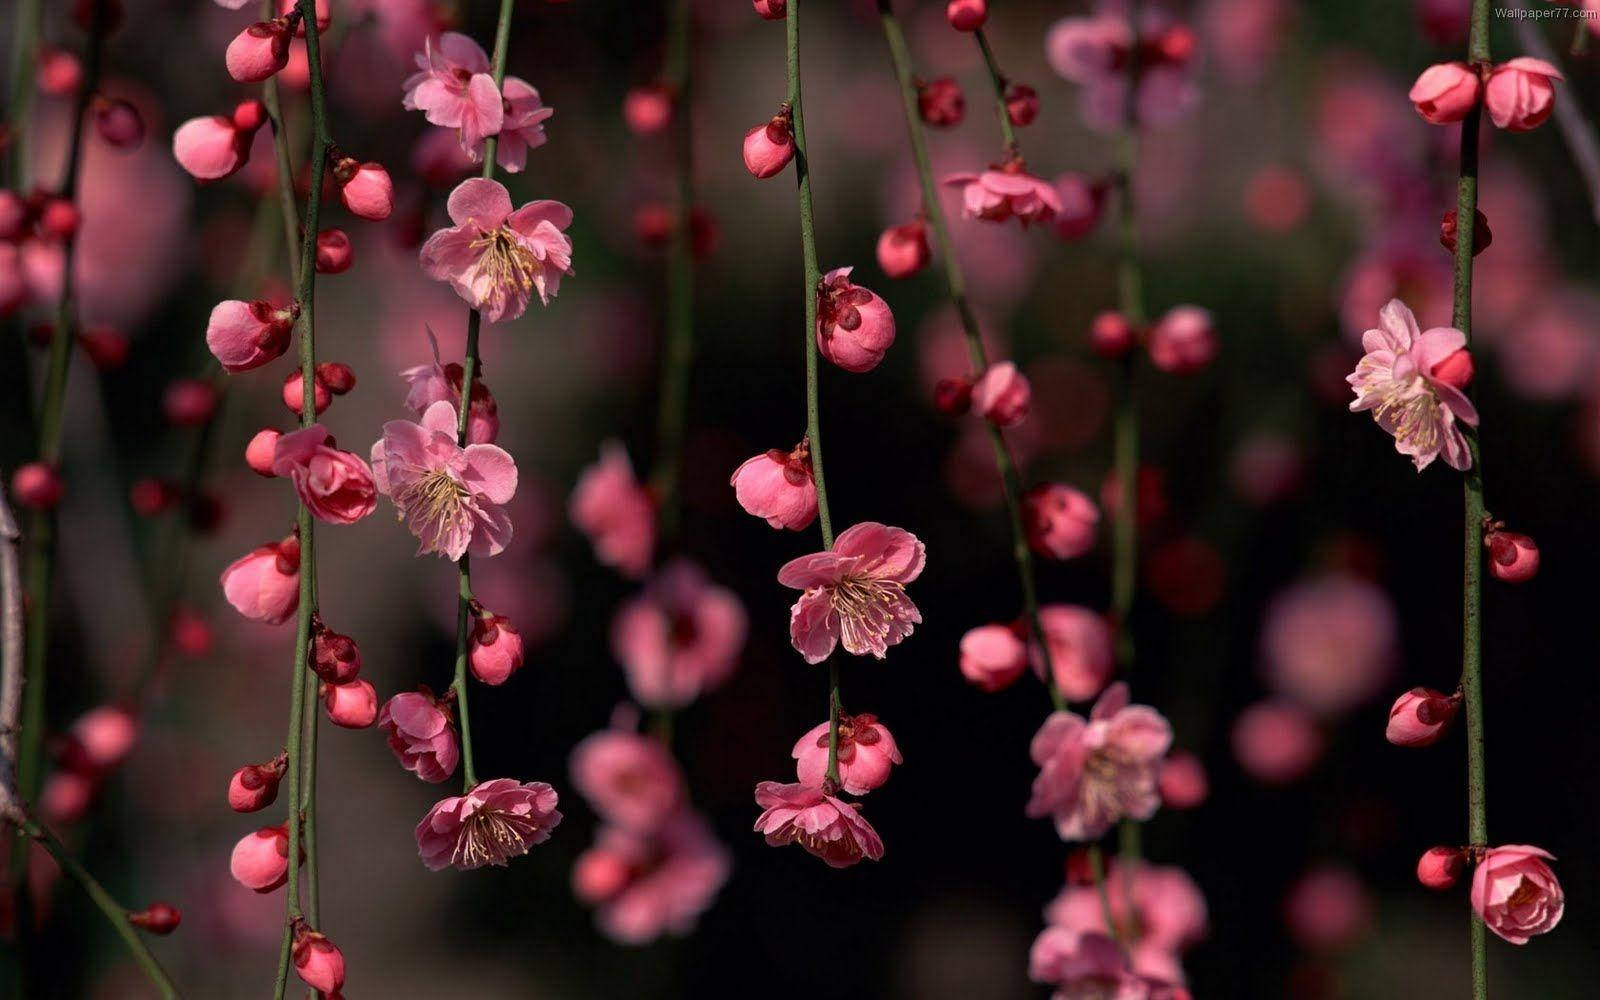 Hanging Cute Pink Flower Blooms